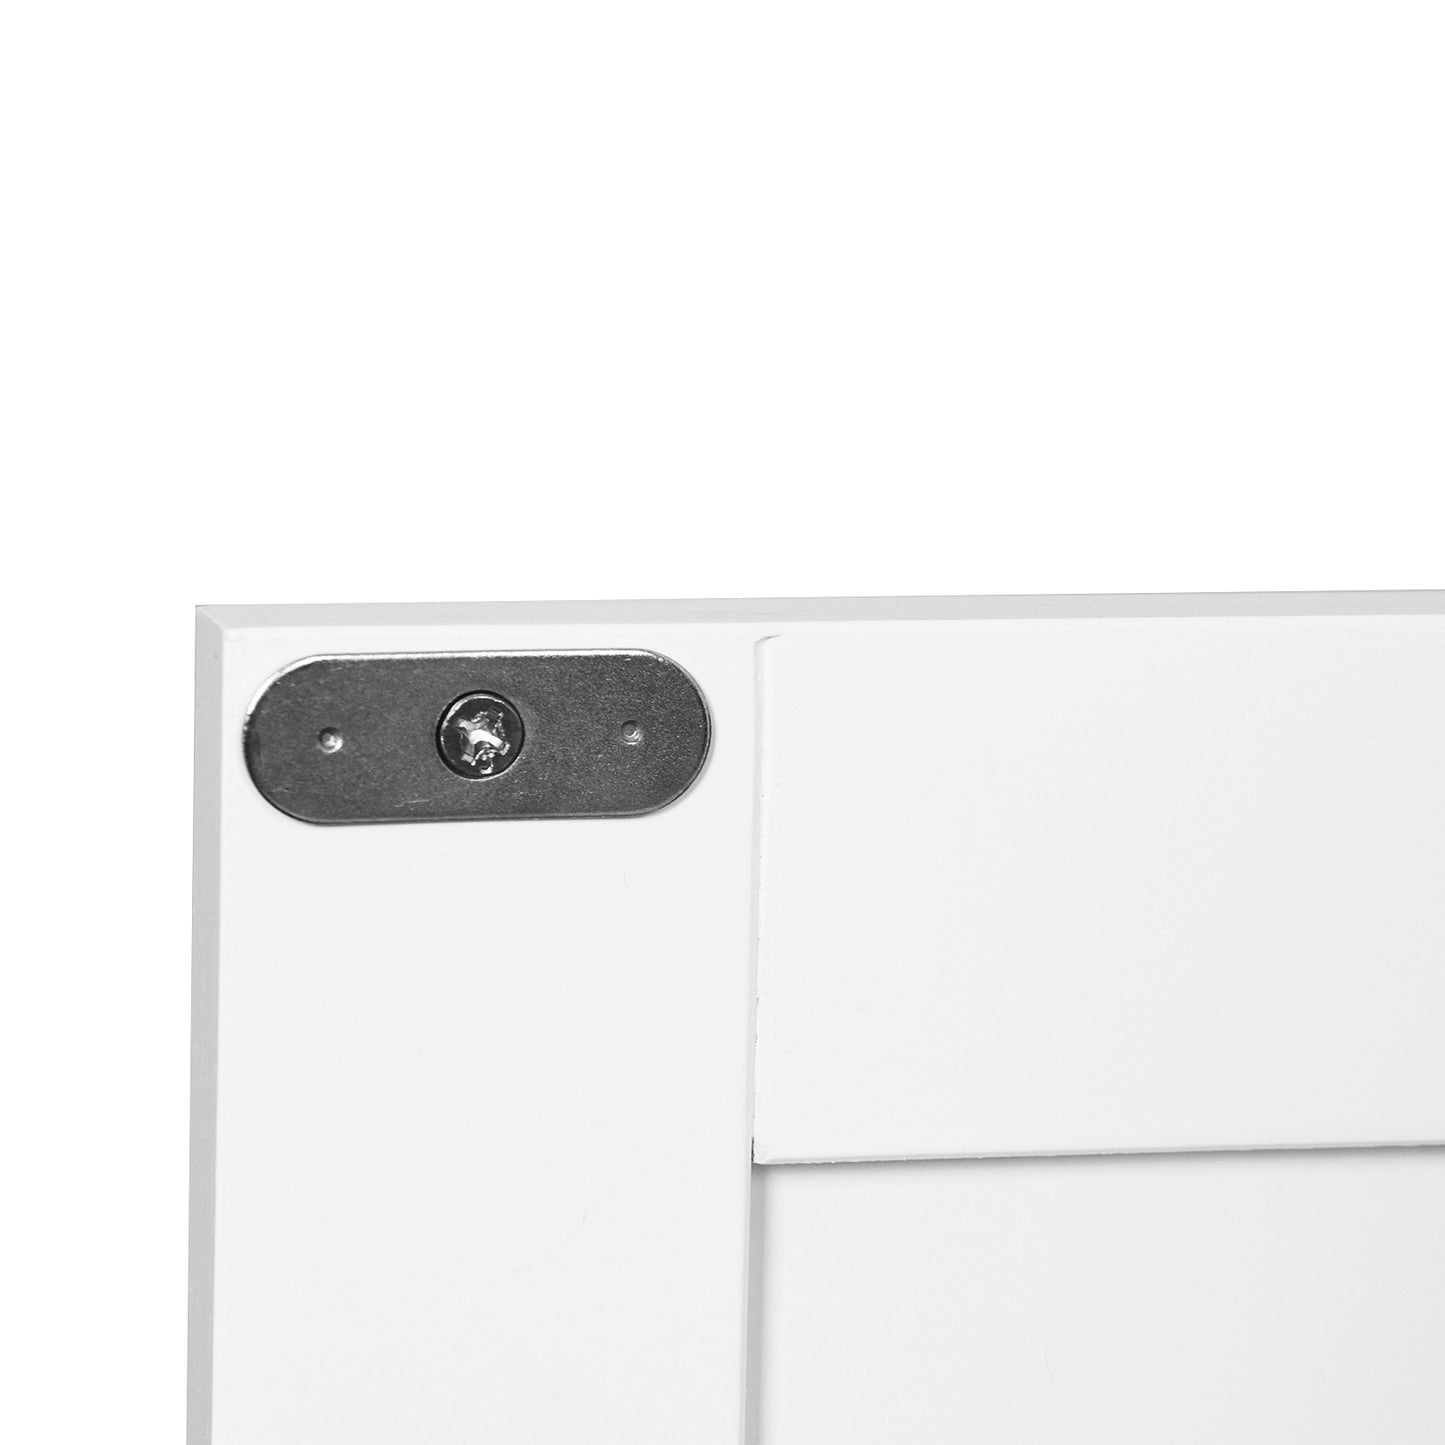 Bathroom Floor Storage Cabinet with Double Door Adjustable Shelf -White